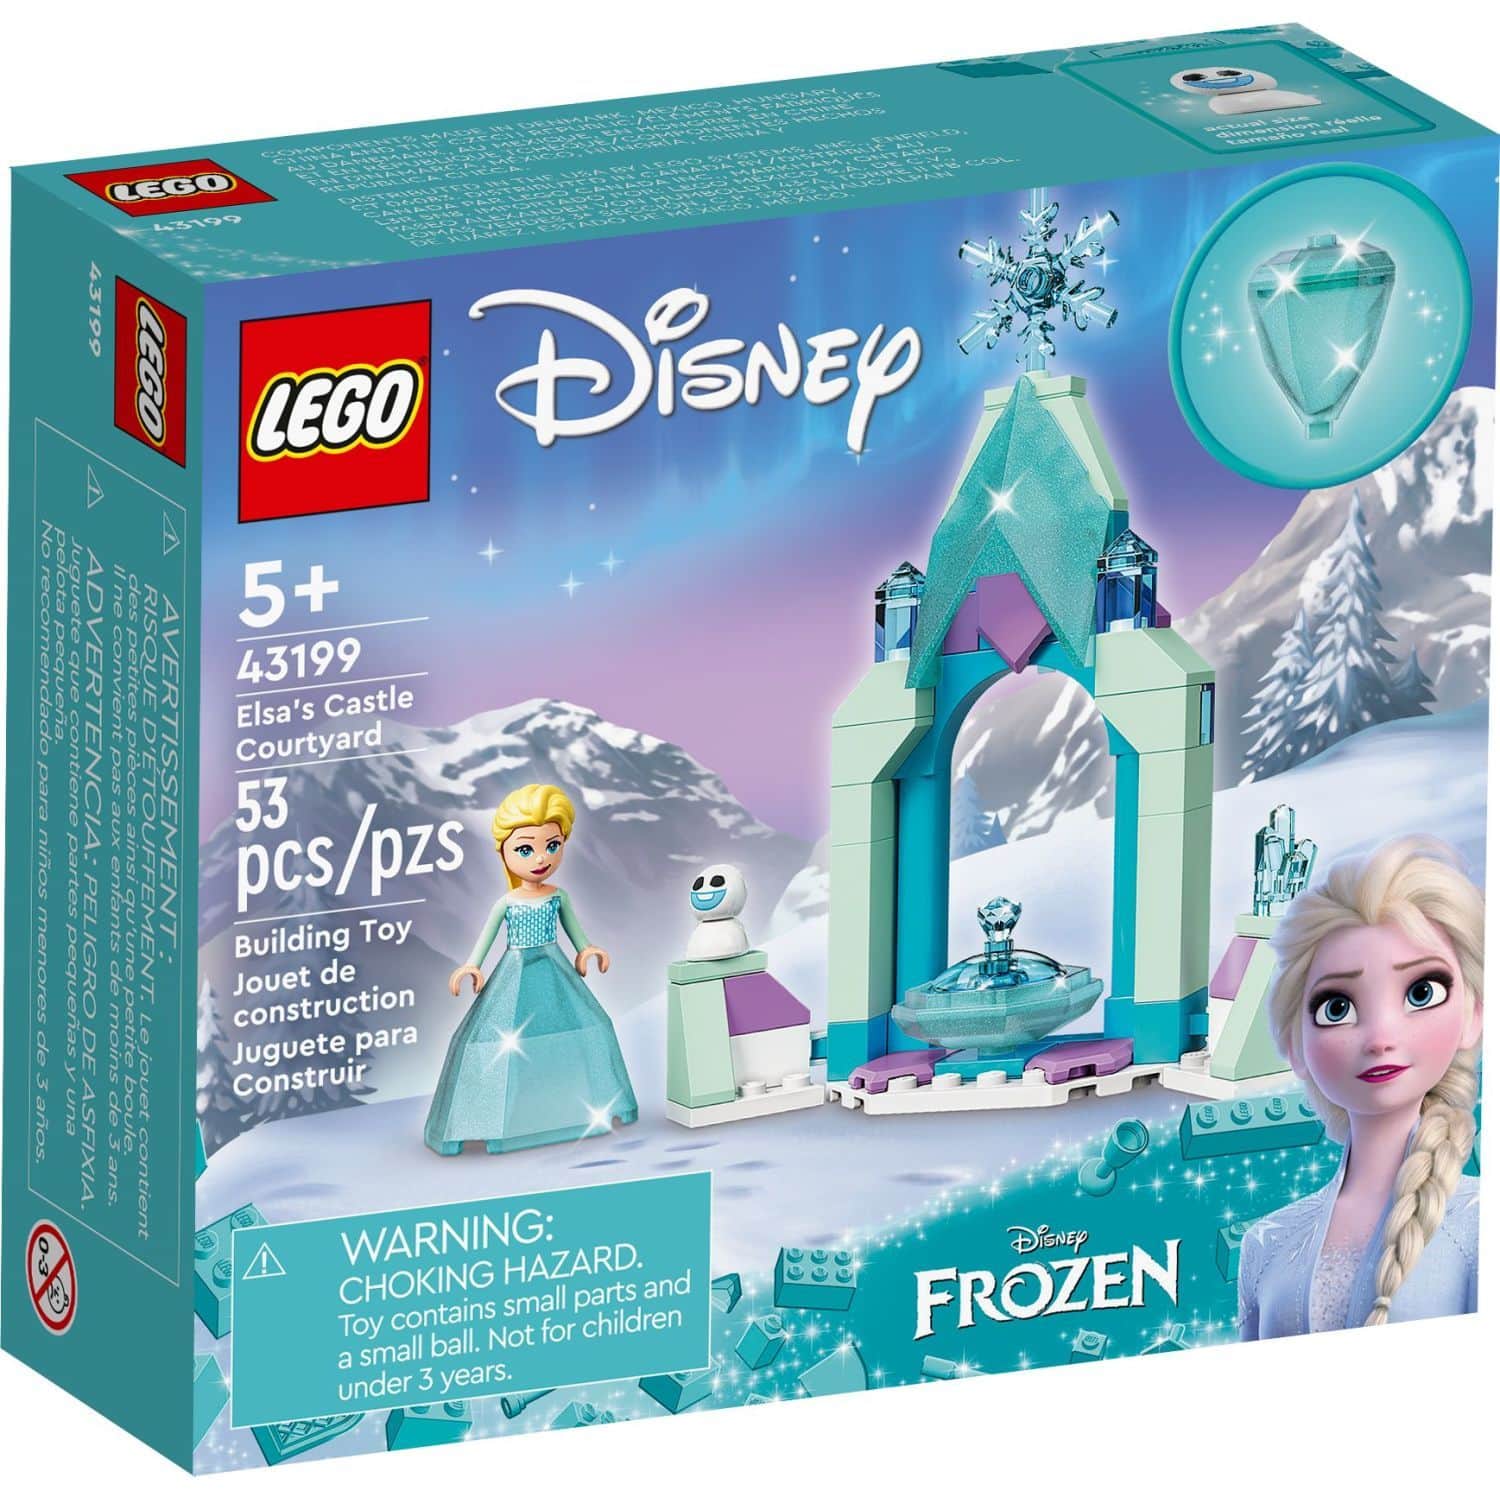 LEGO® Disney Elsa’s Castle Courtyard 43199, 53 pcs, Age 8+ | Canadian Tire